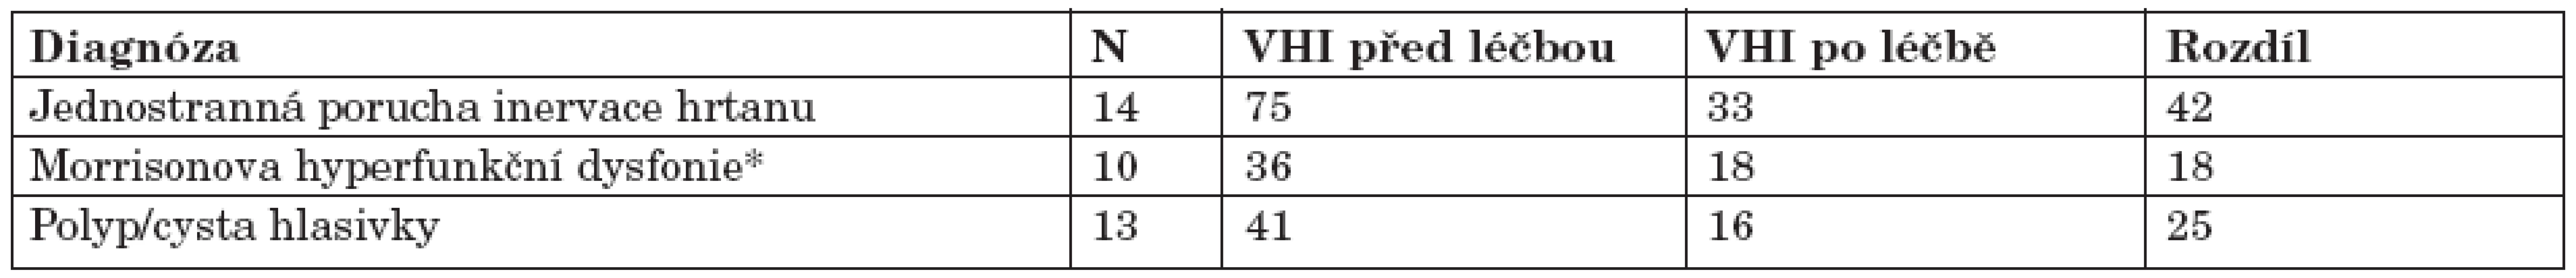 Střední hodnoty VHI skóre před léčbou a po léčbě u vybraných diagnóz poruch hlasu. Podle Rosena a kol. (20).